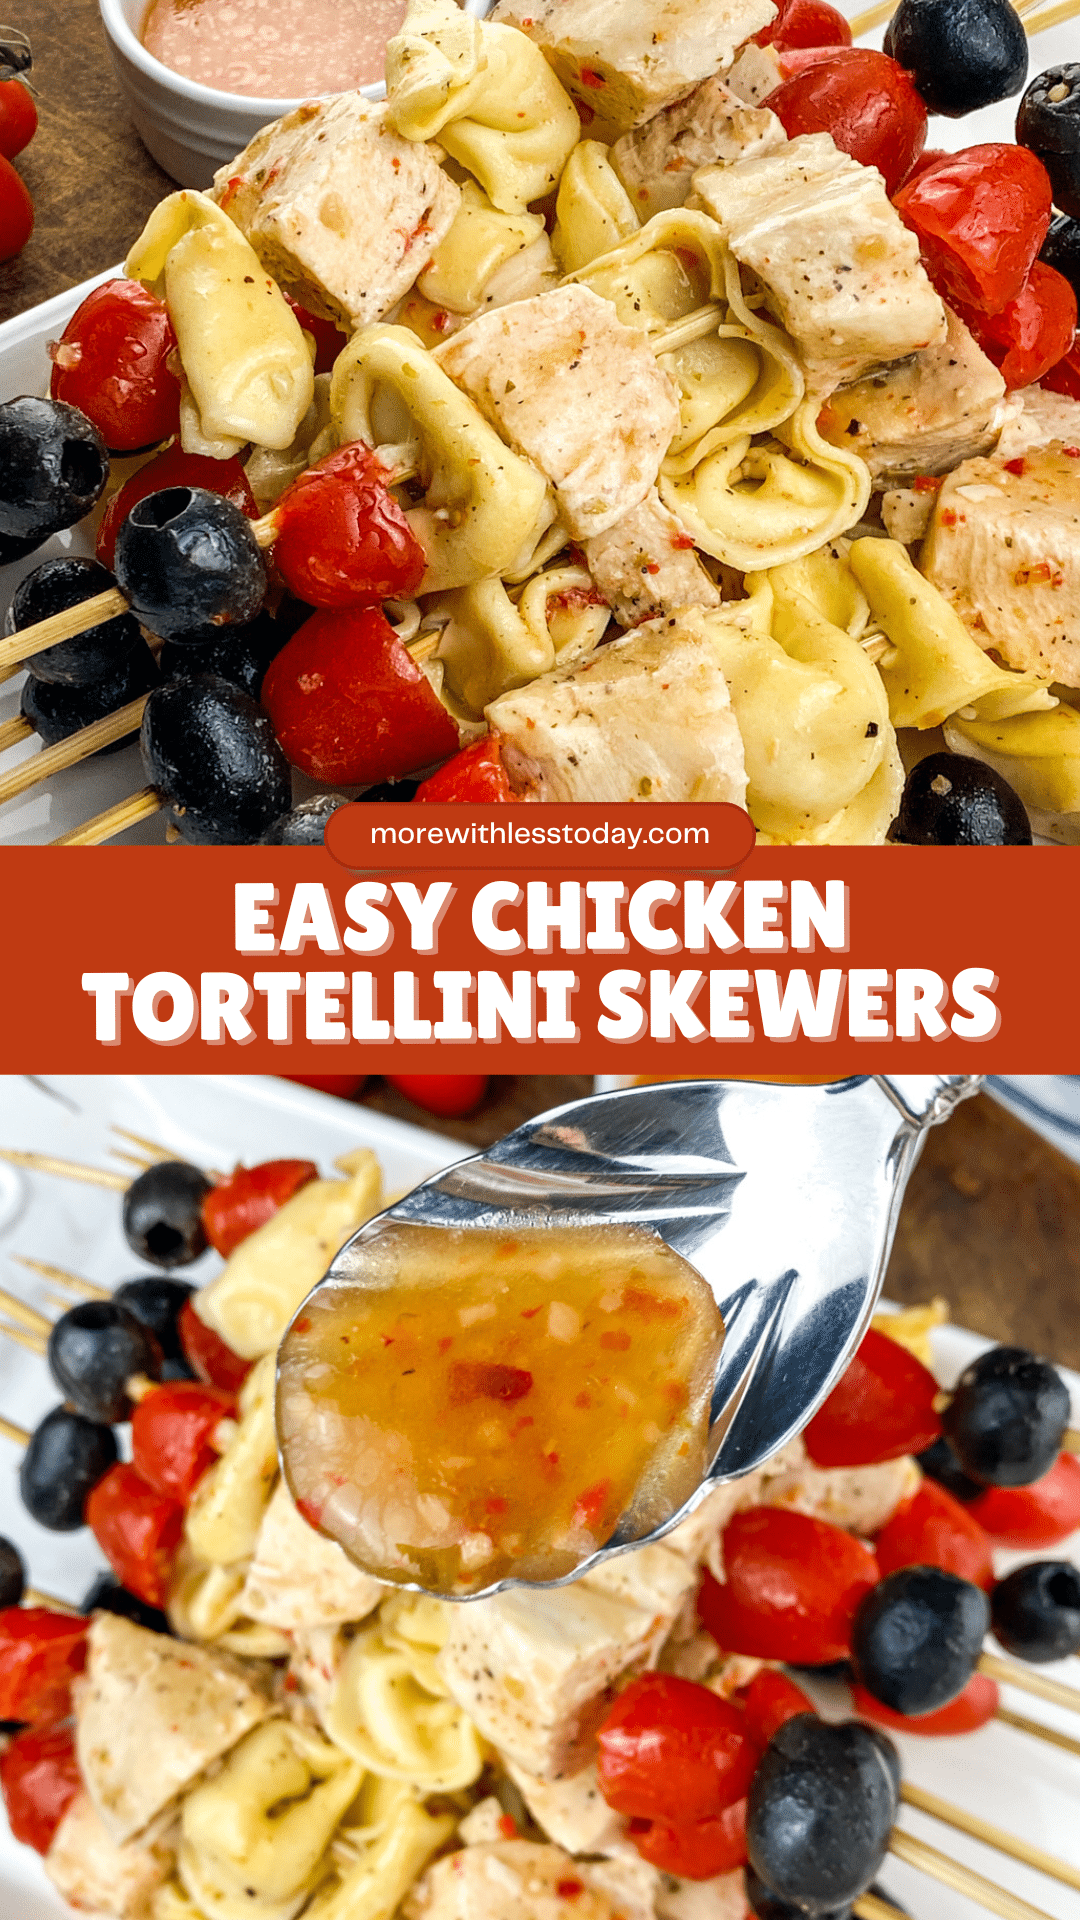 Easy Chicken Tortellini Skewers - PIN